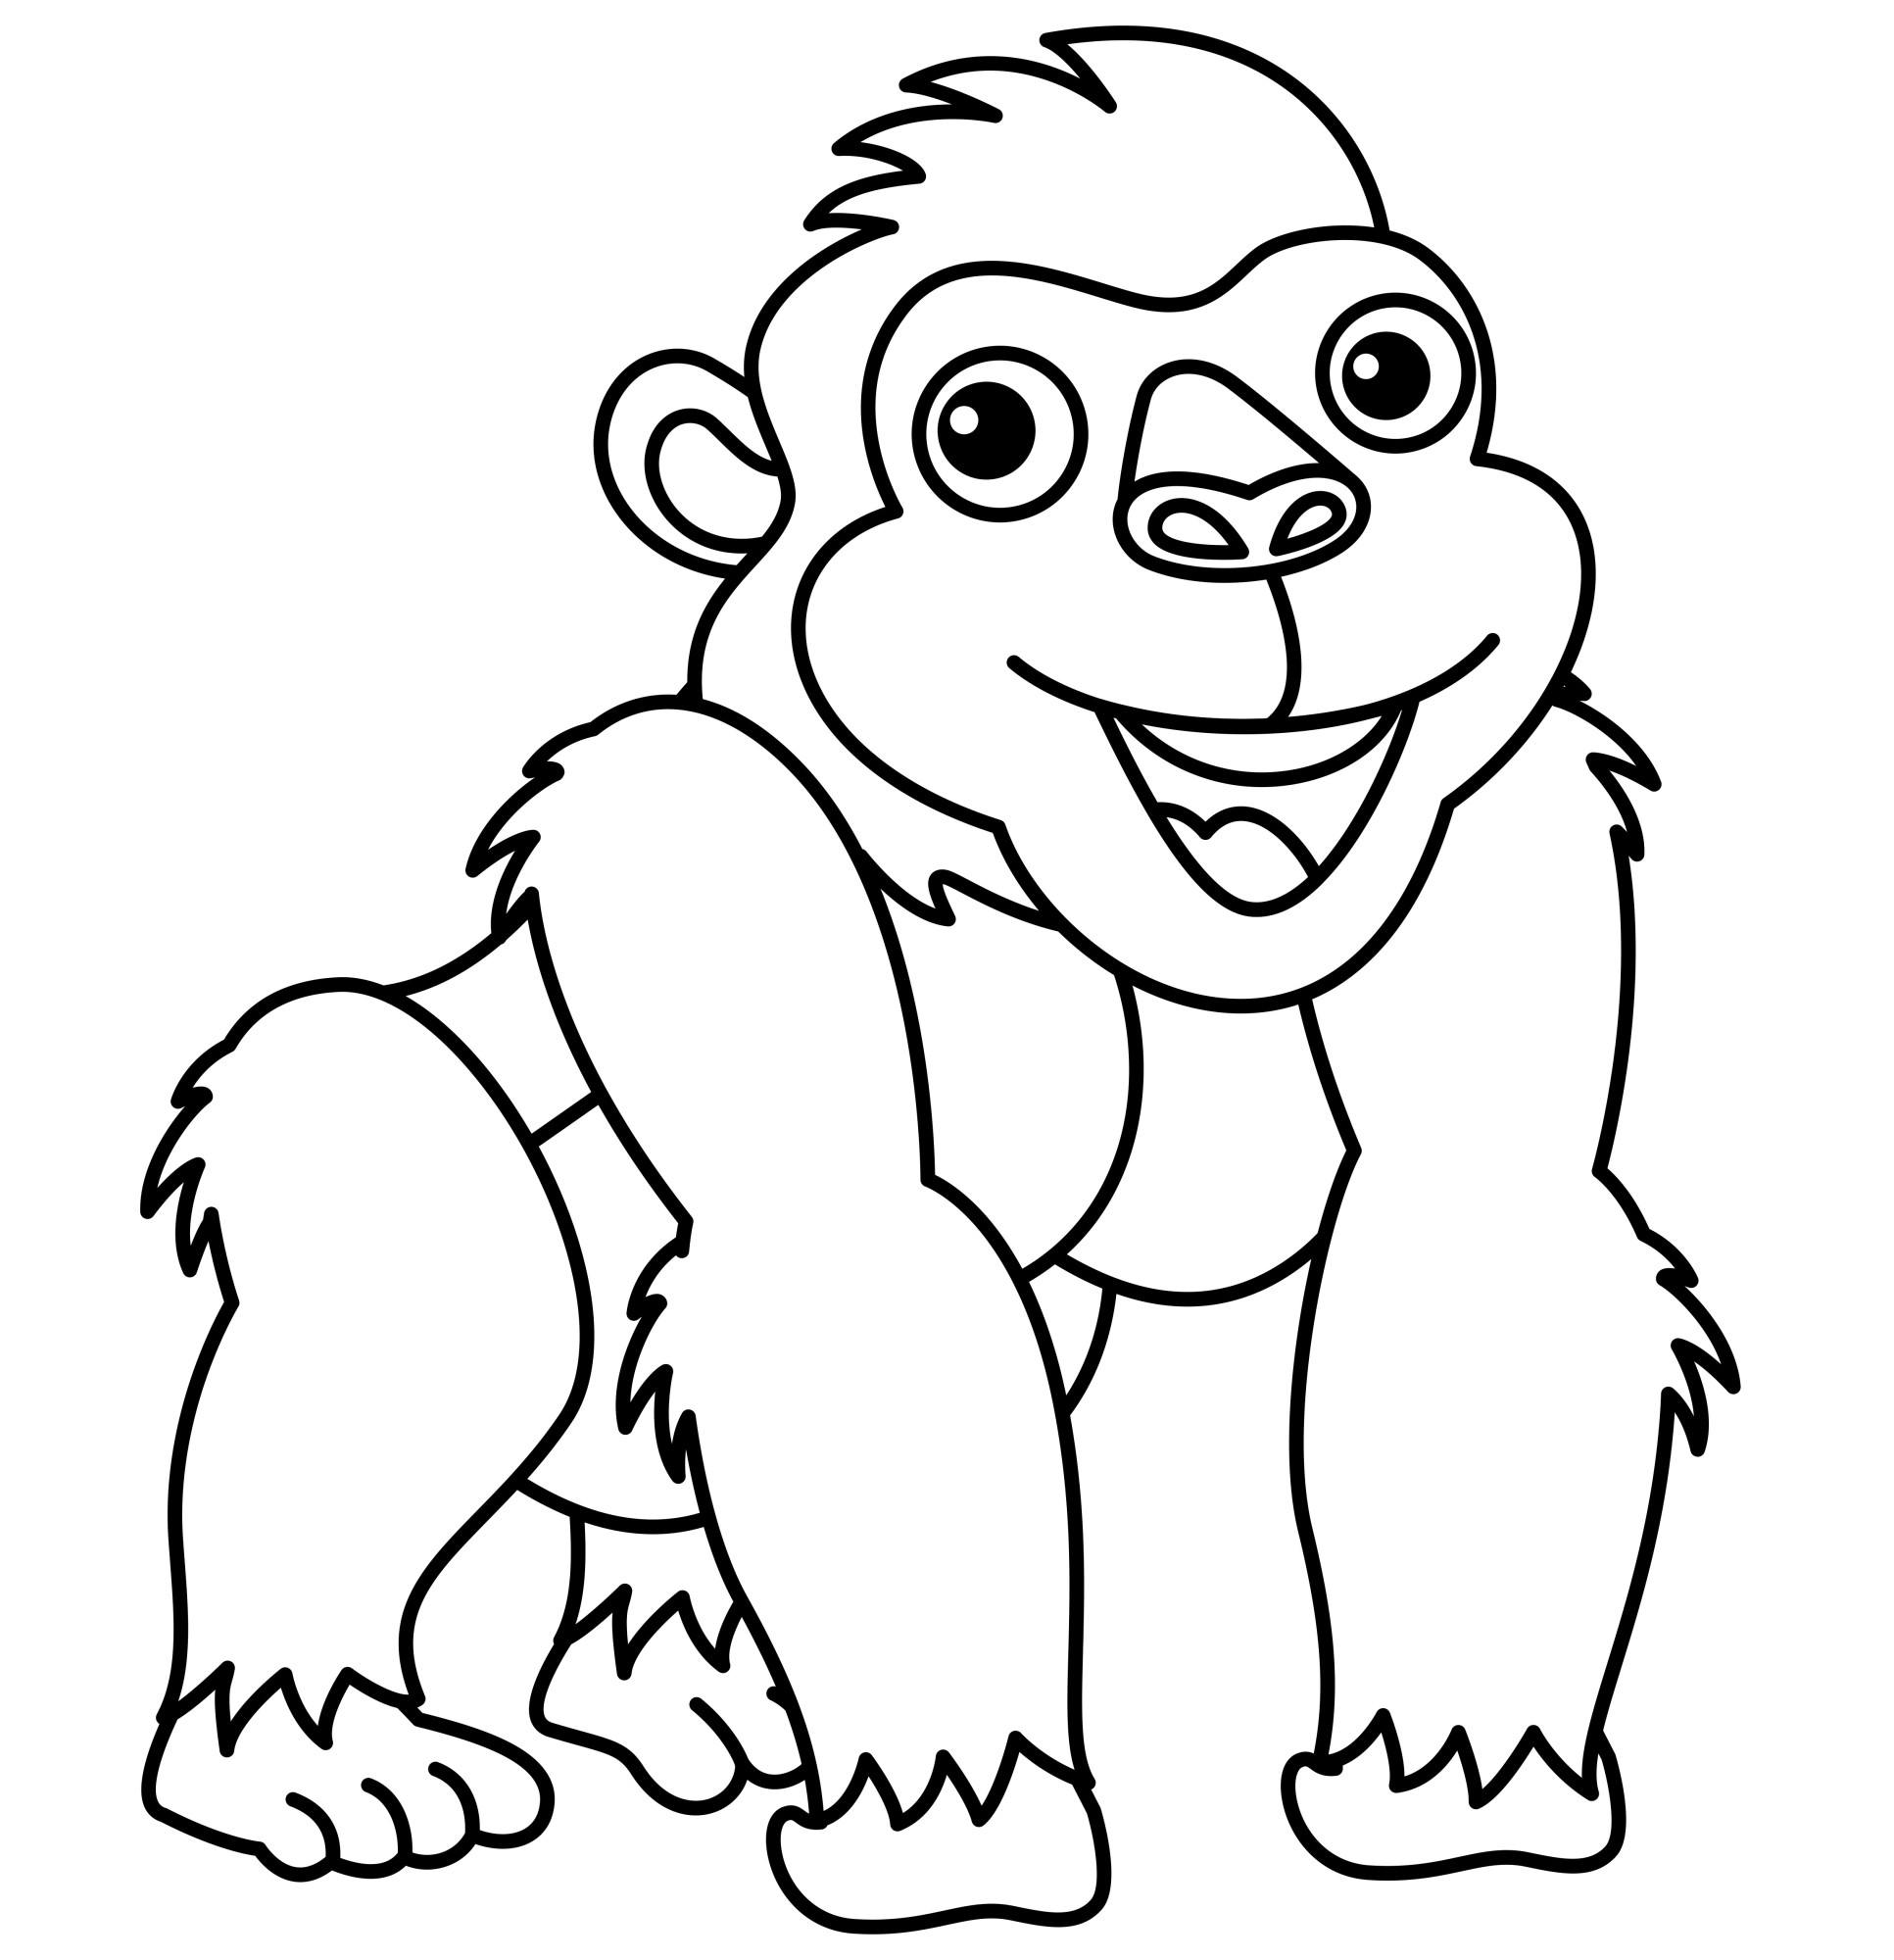 Раскраска для детей: обезьяна горилла